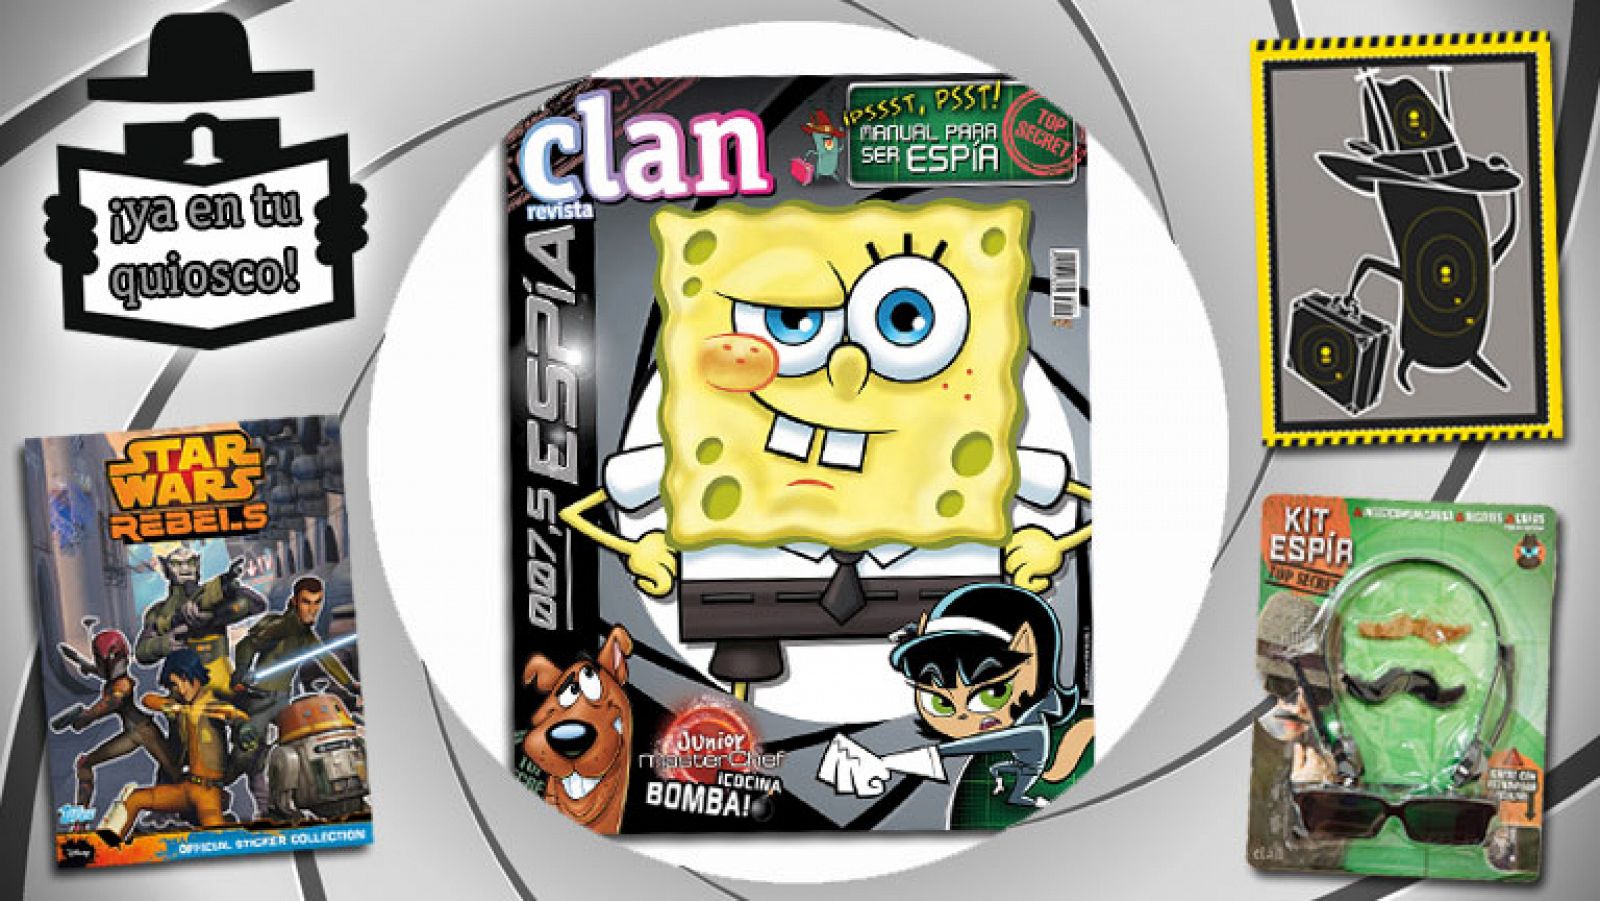 Revista Clan Febrero 2015